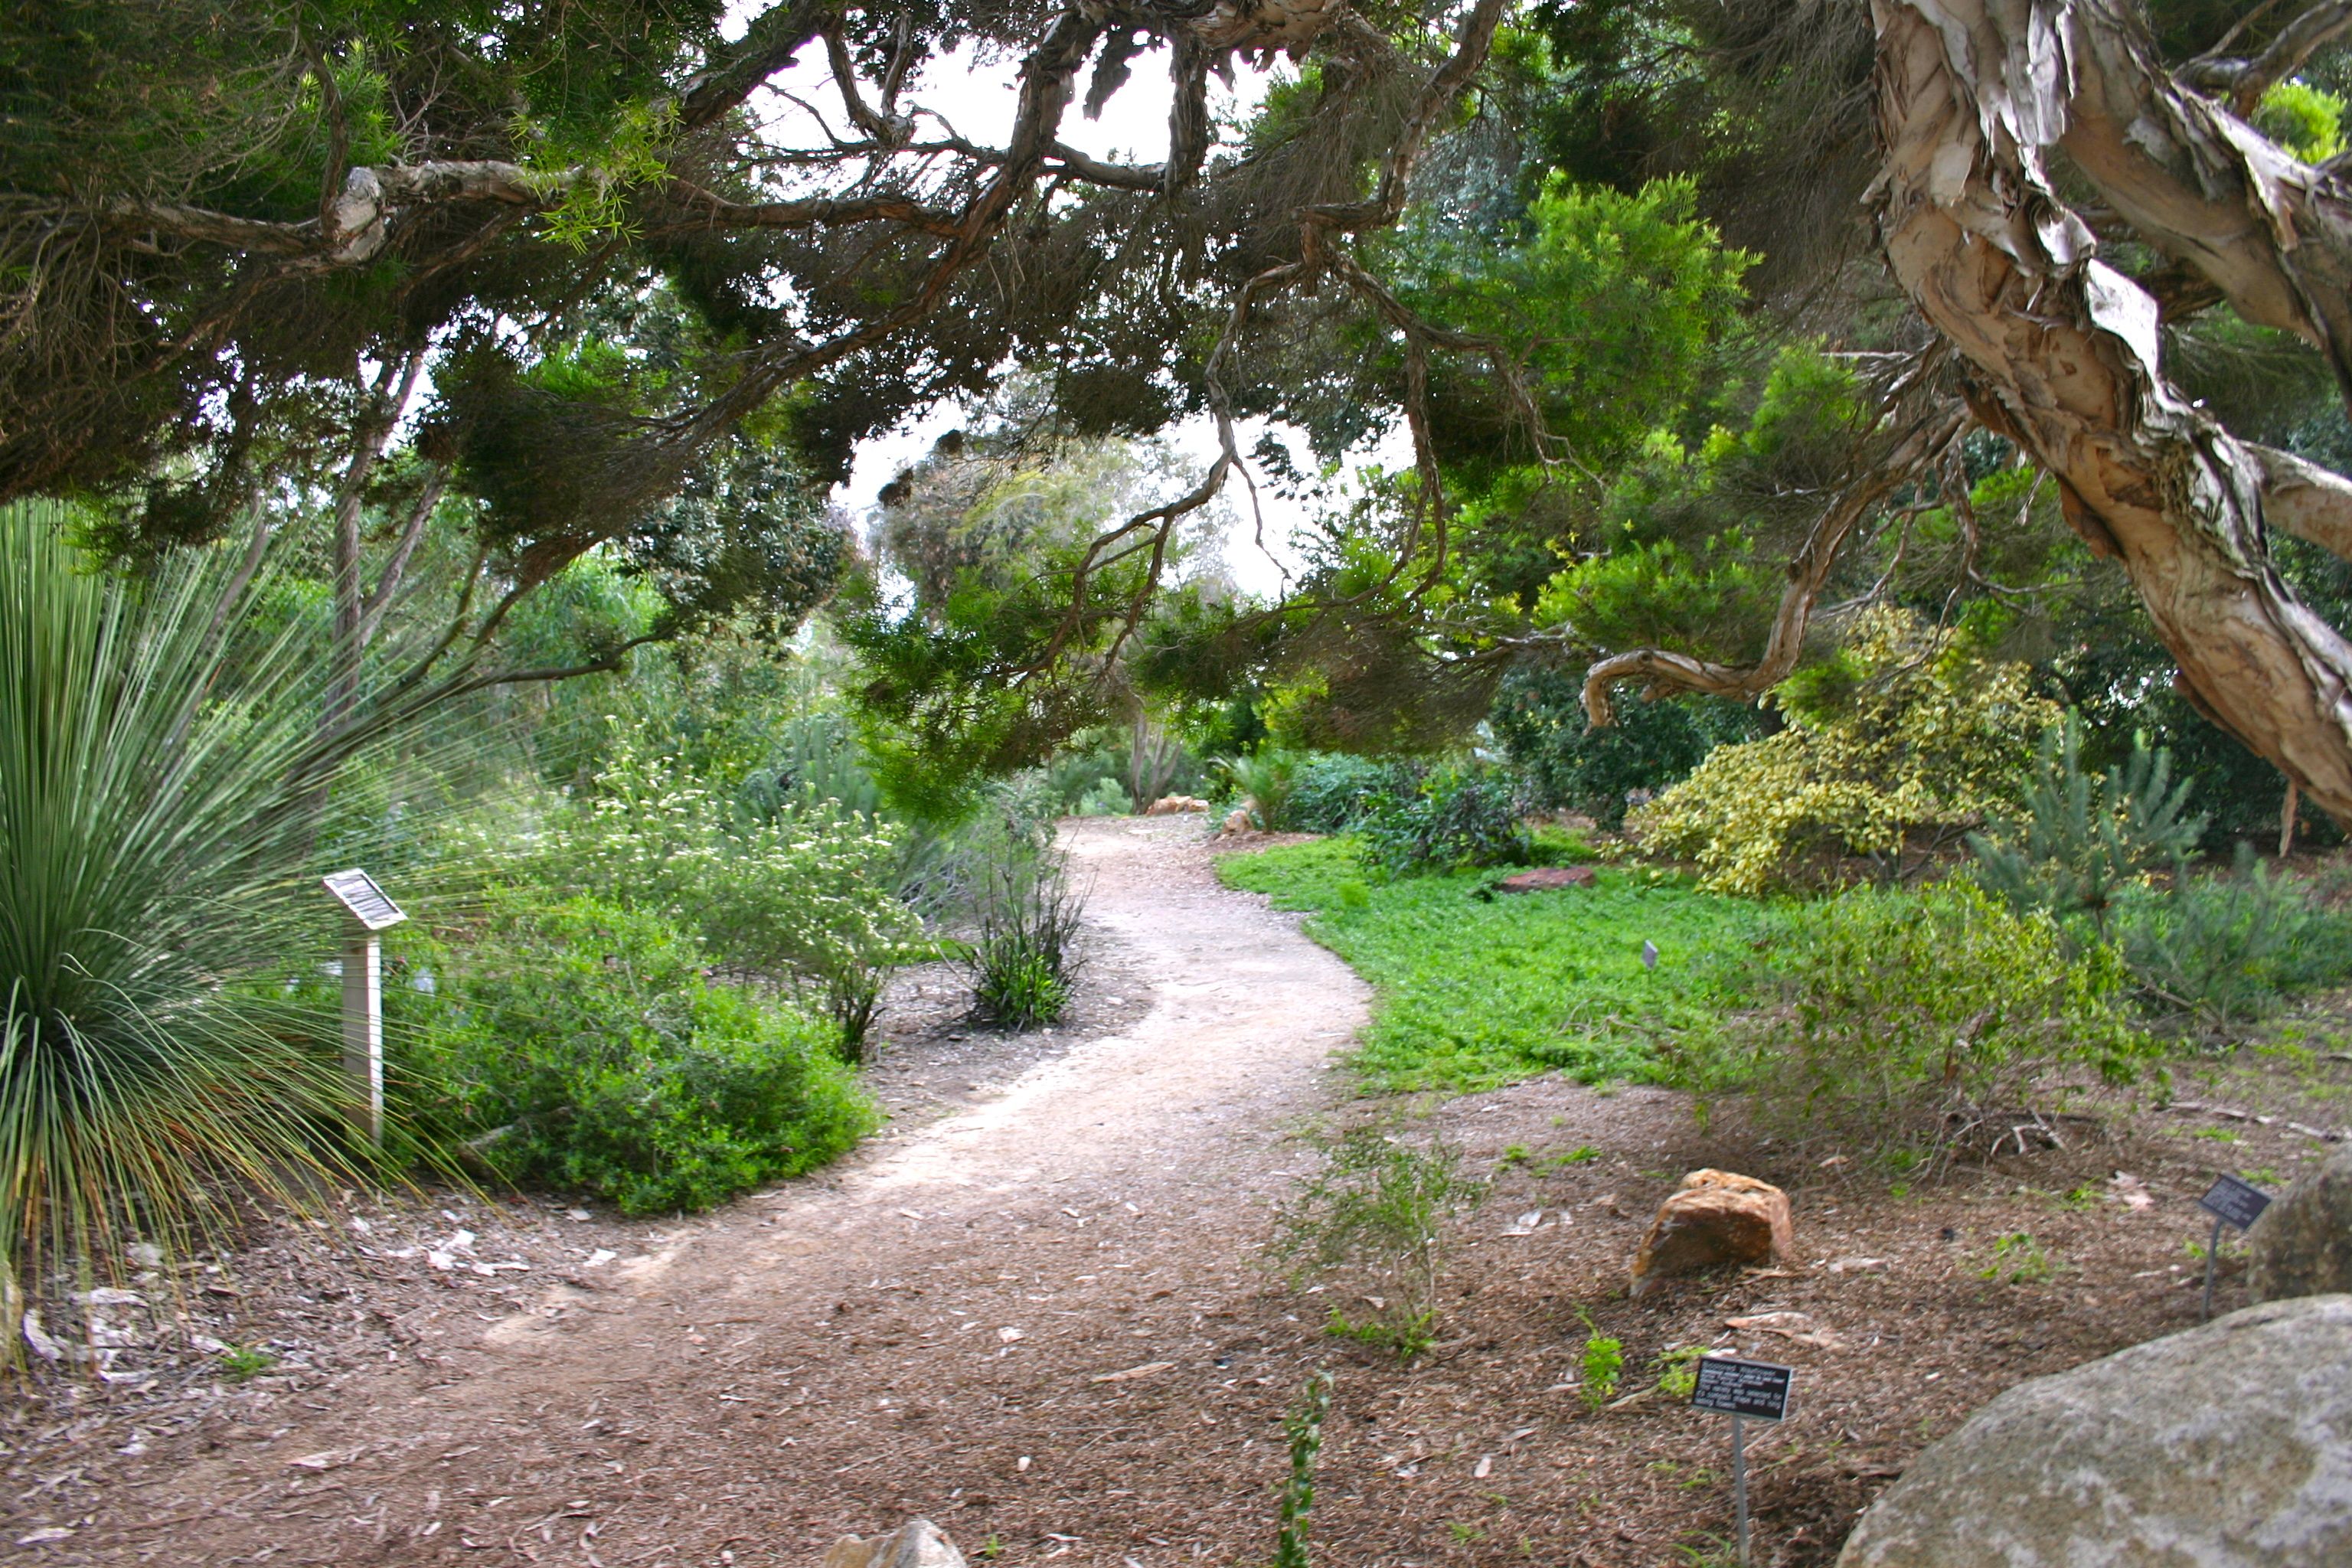  path through a garden